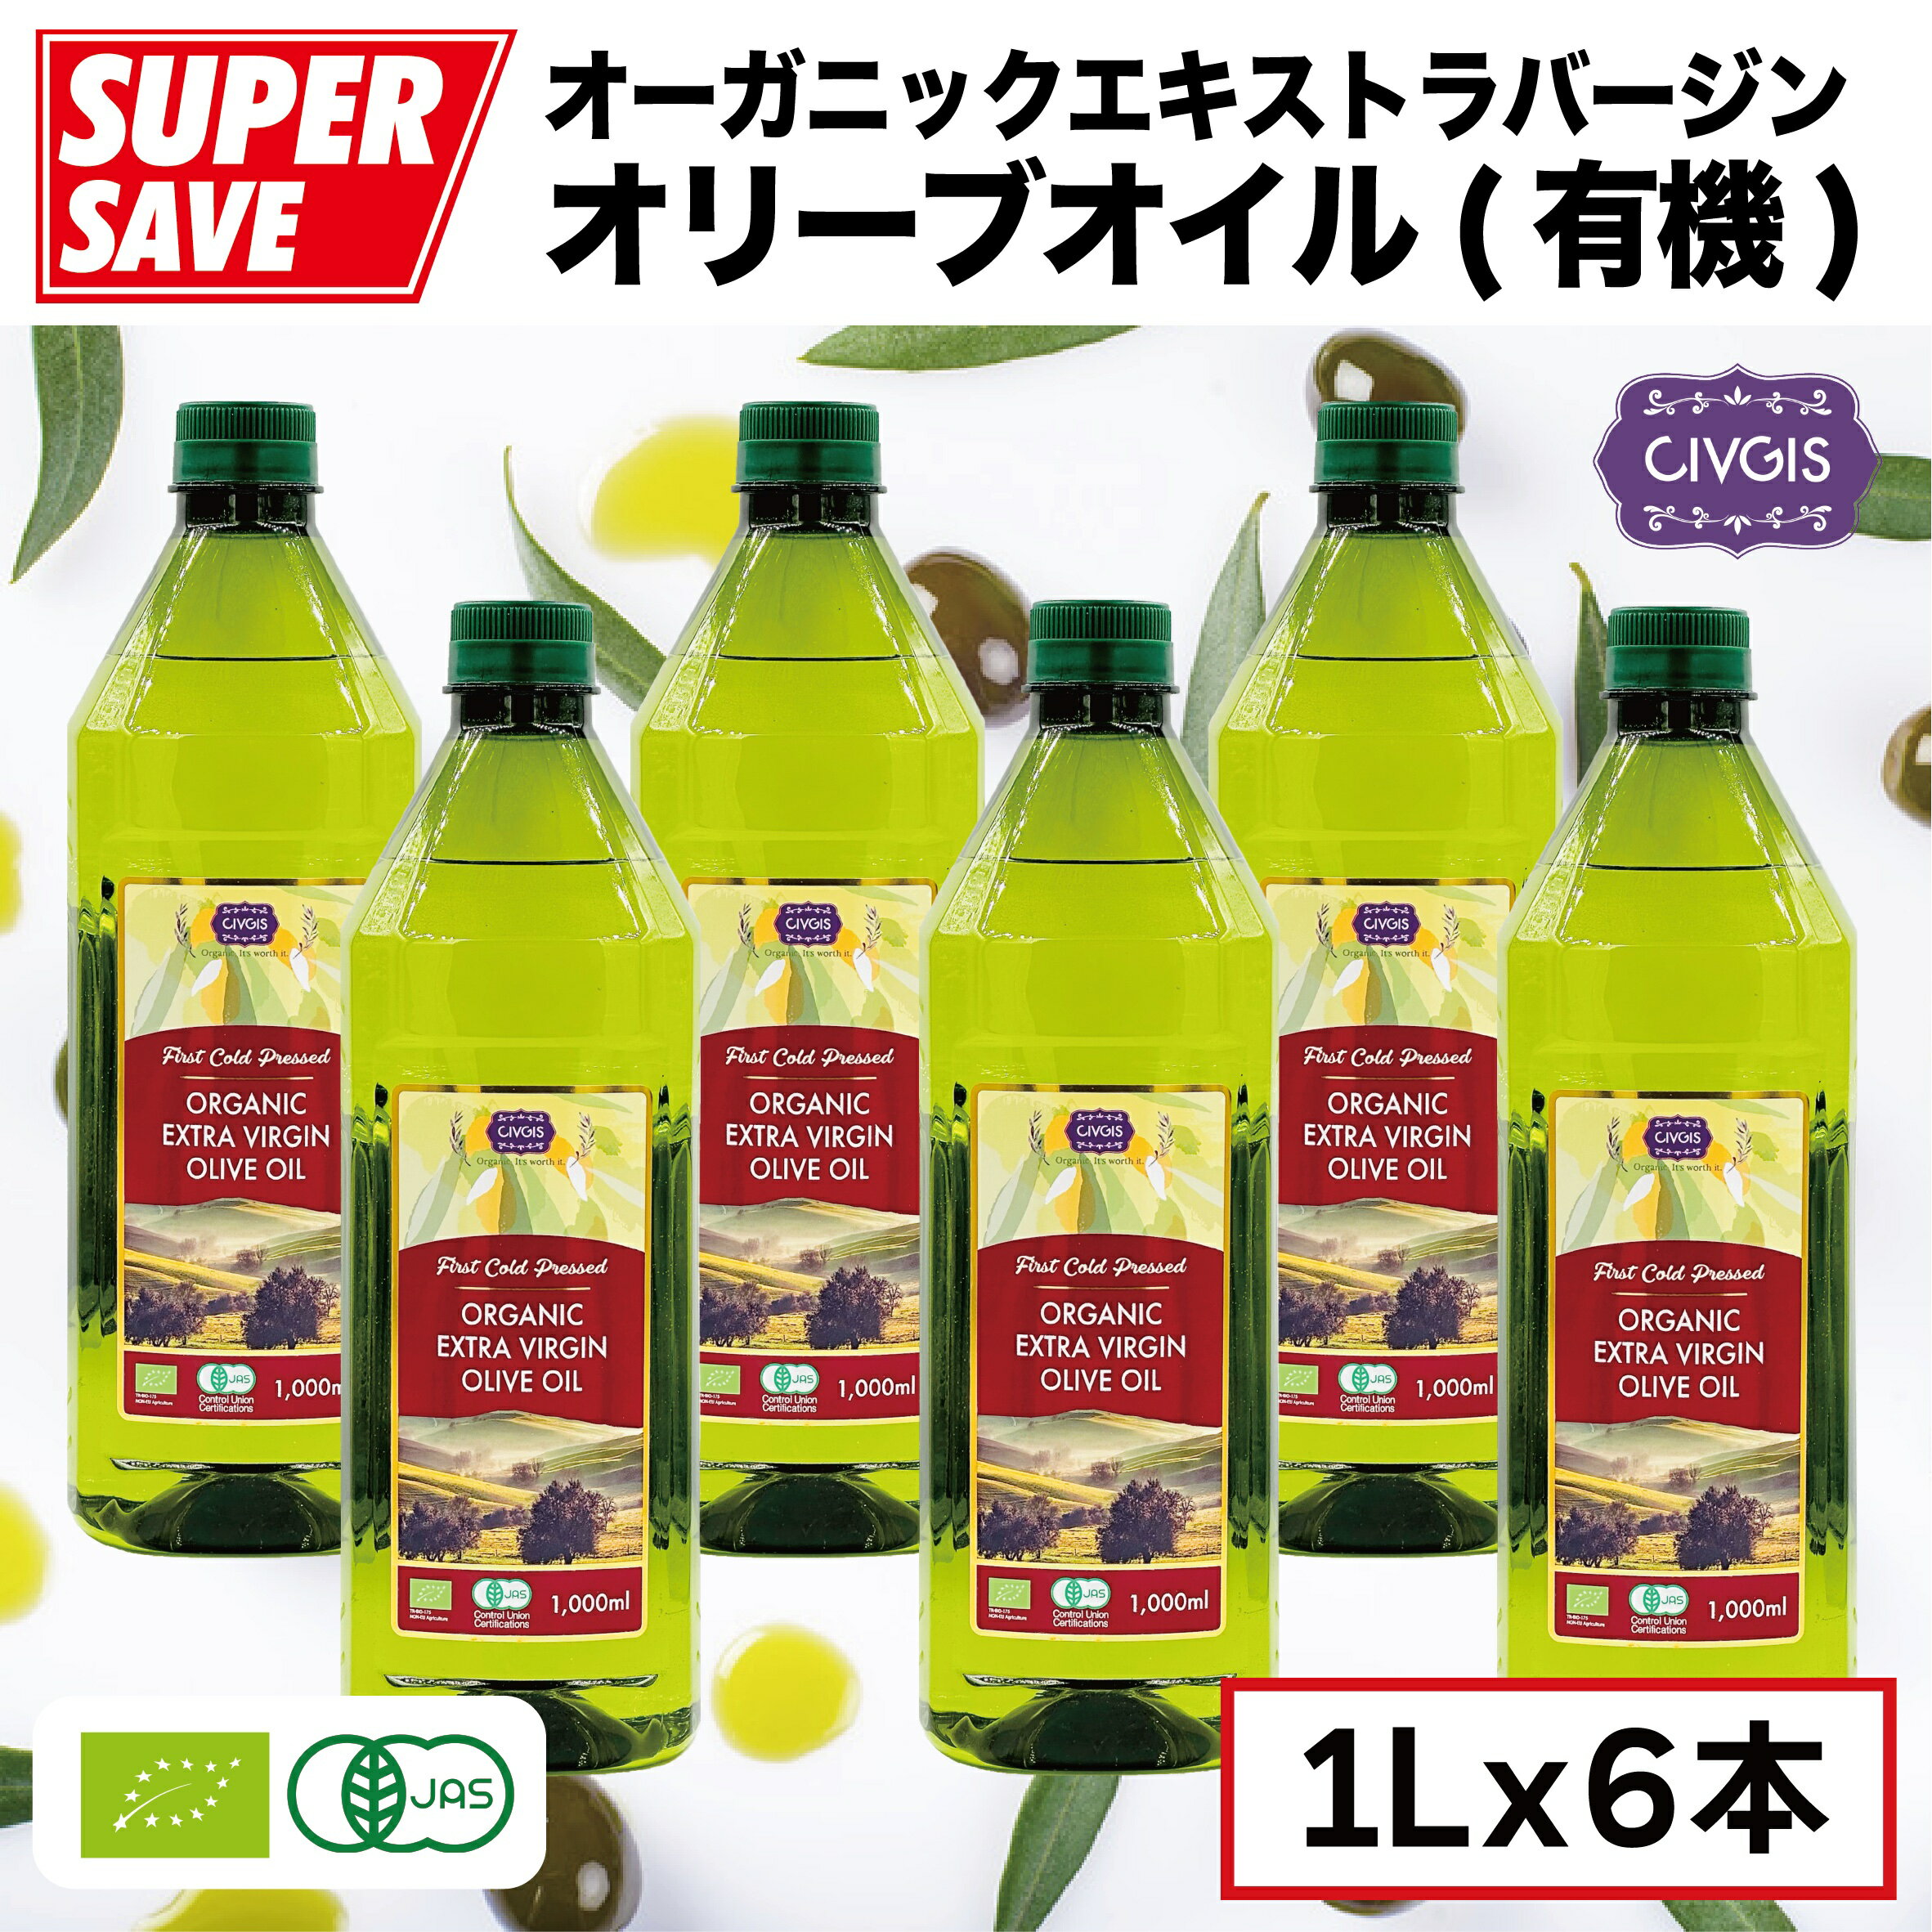 オリーブオイル オーガニック エキストラバージンペットボトル入りOrganic Extra Virgin Olive Oil 1,000ml X 6PCS『CIVGIS チブギス』